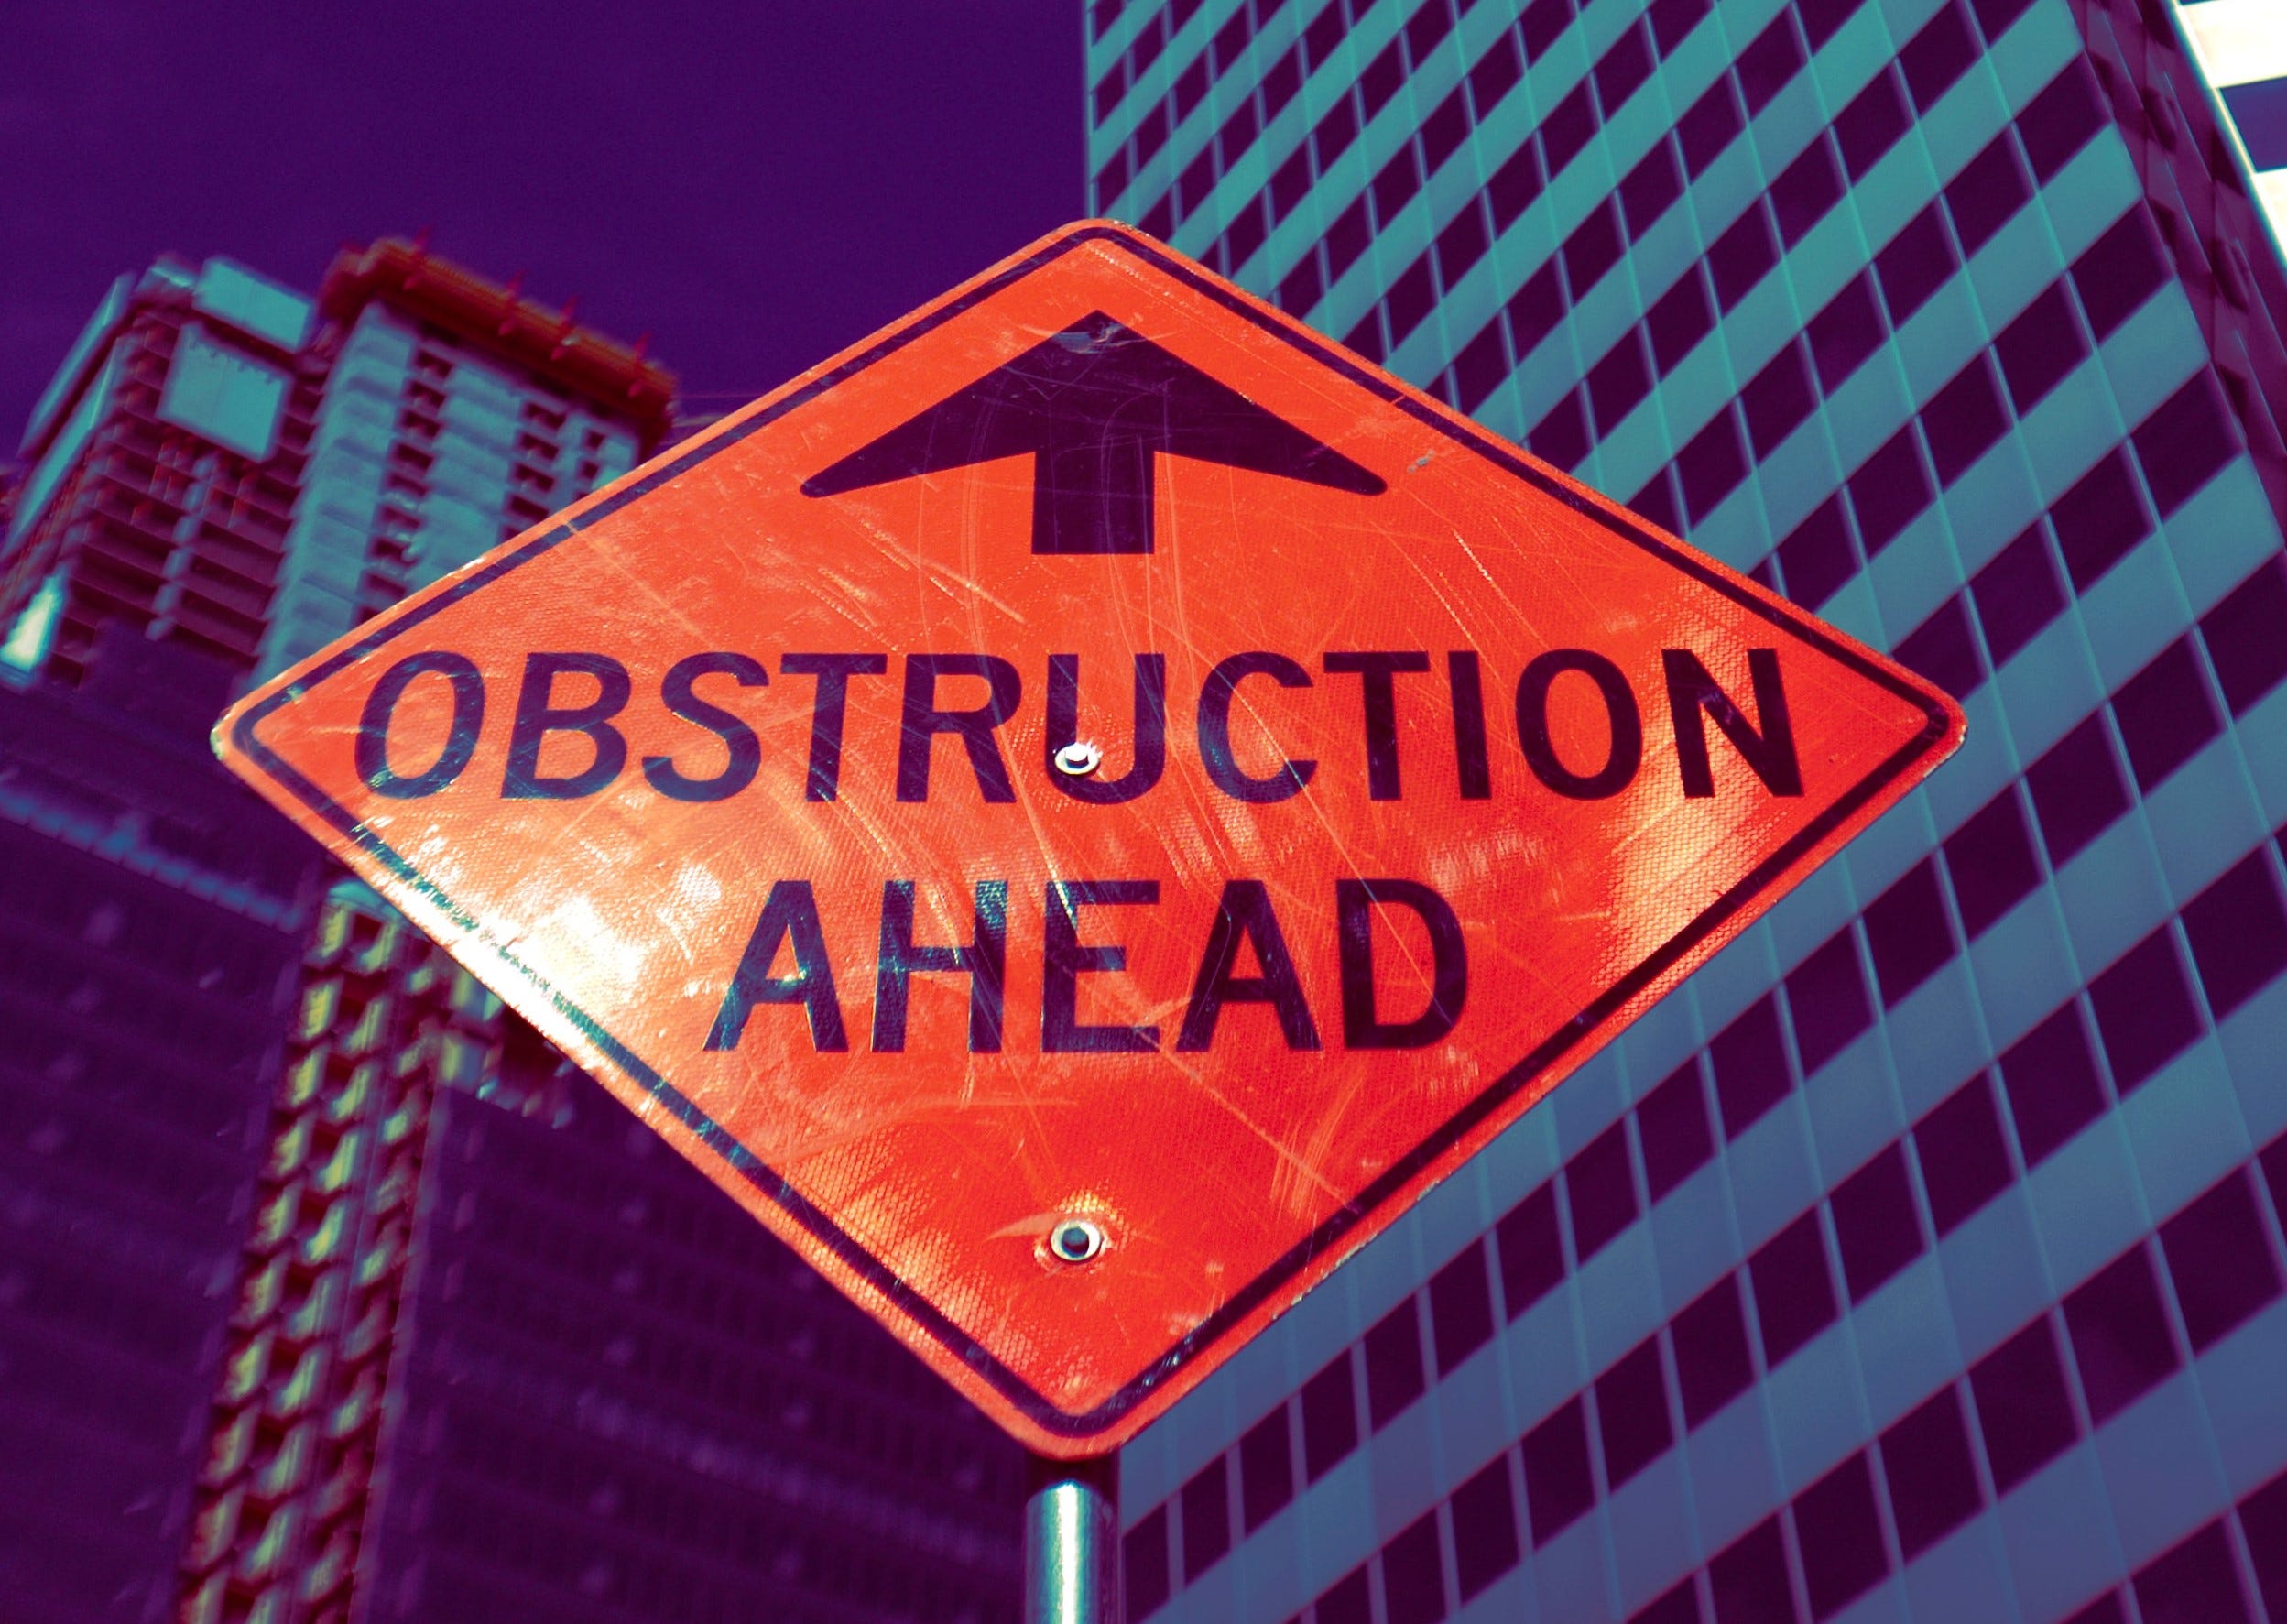 Obstruction junction - by Judd Legum - Popular Information